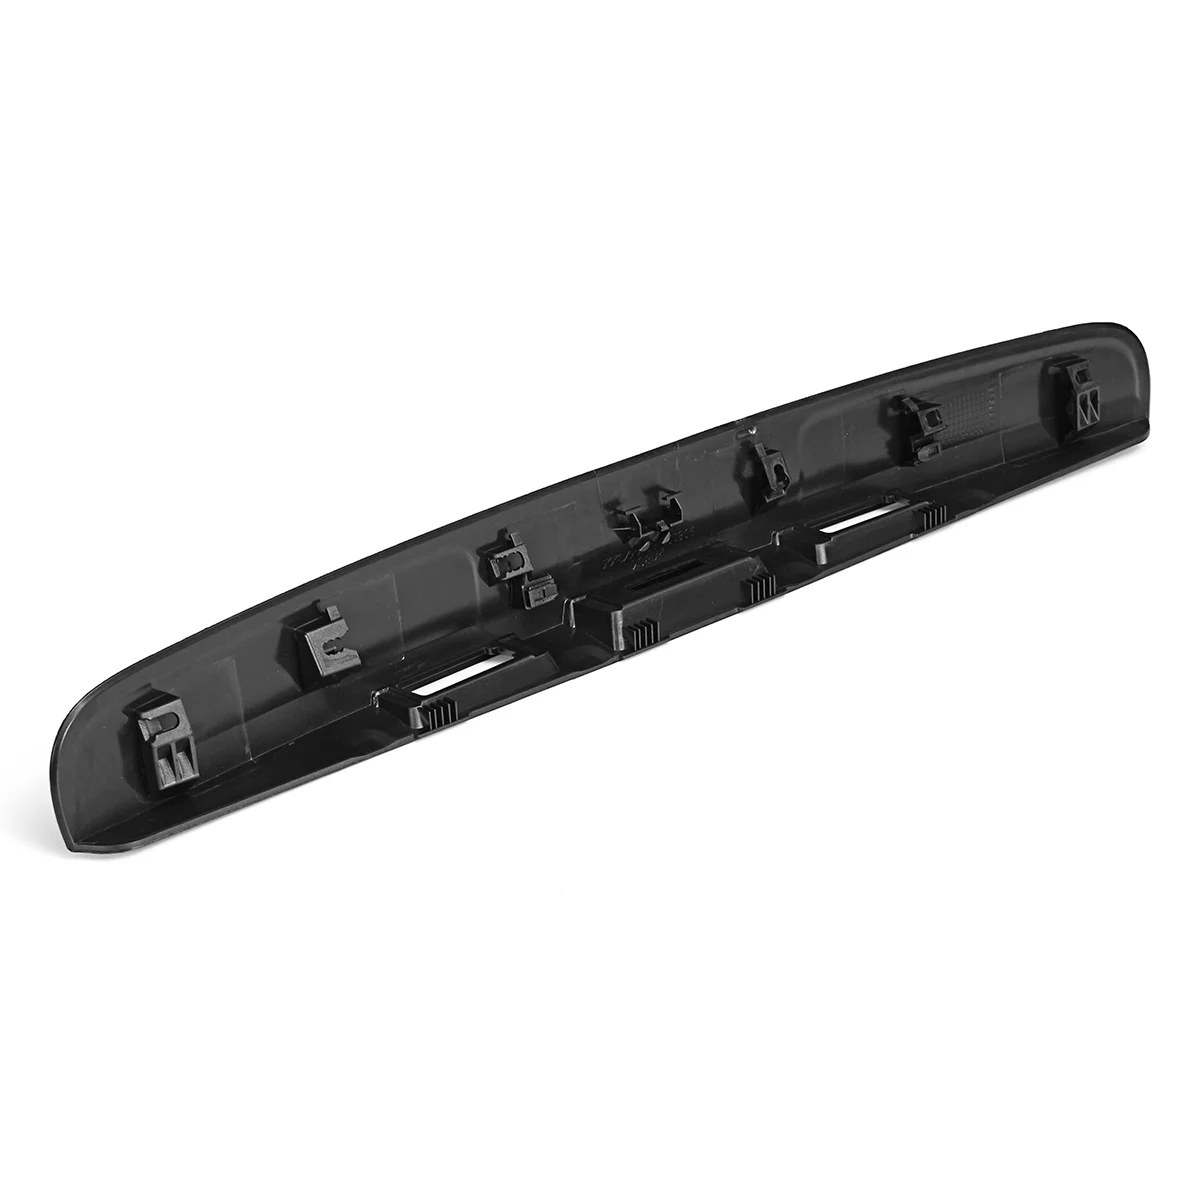 Primered черная крышка багажника Ручка крышки без I-key& отверстие для камеры для Nissan Qashqai J10 2007- пластиковая накладка